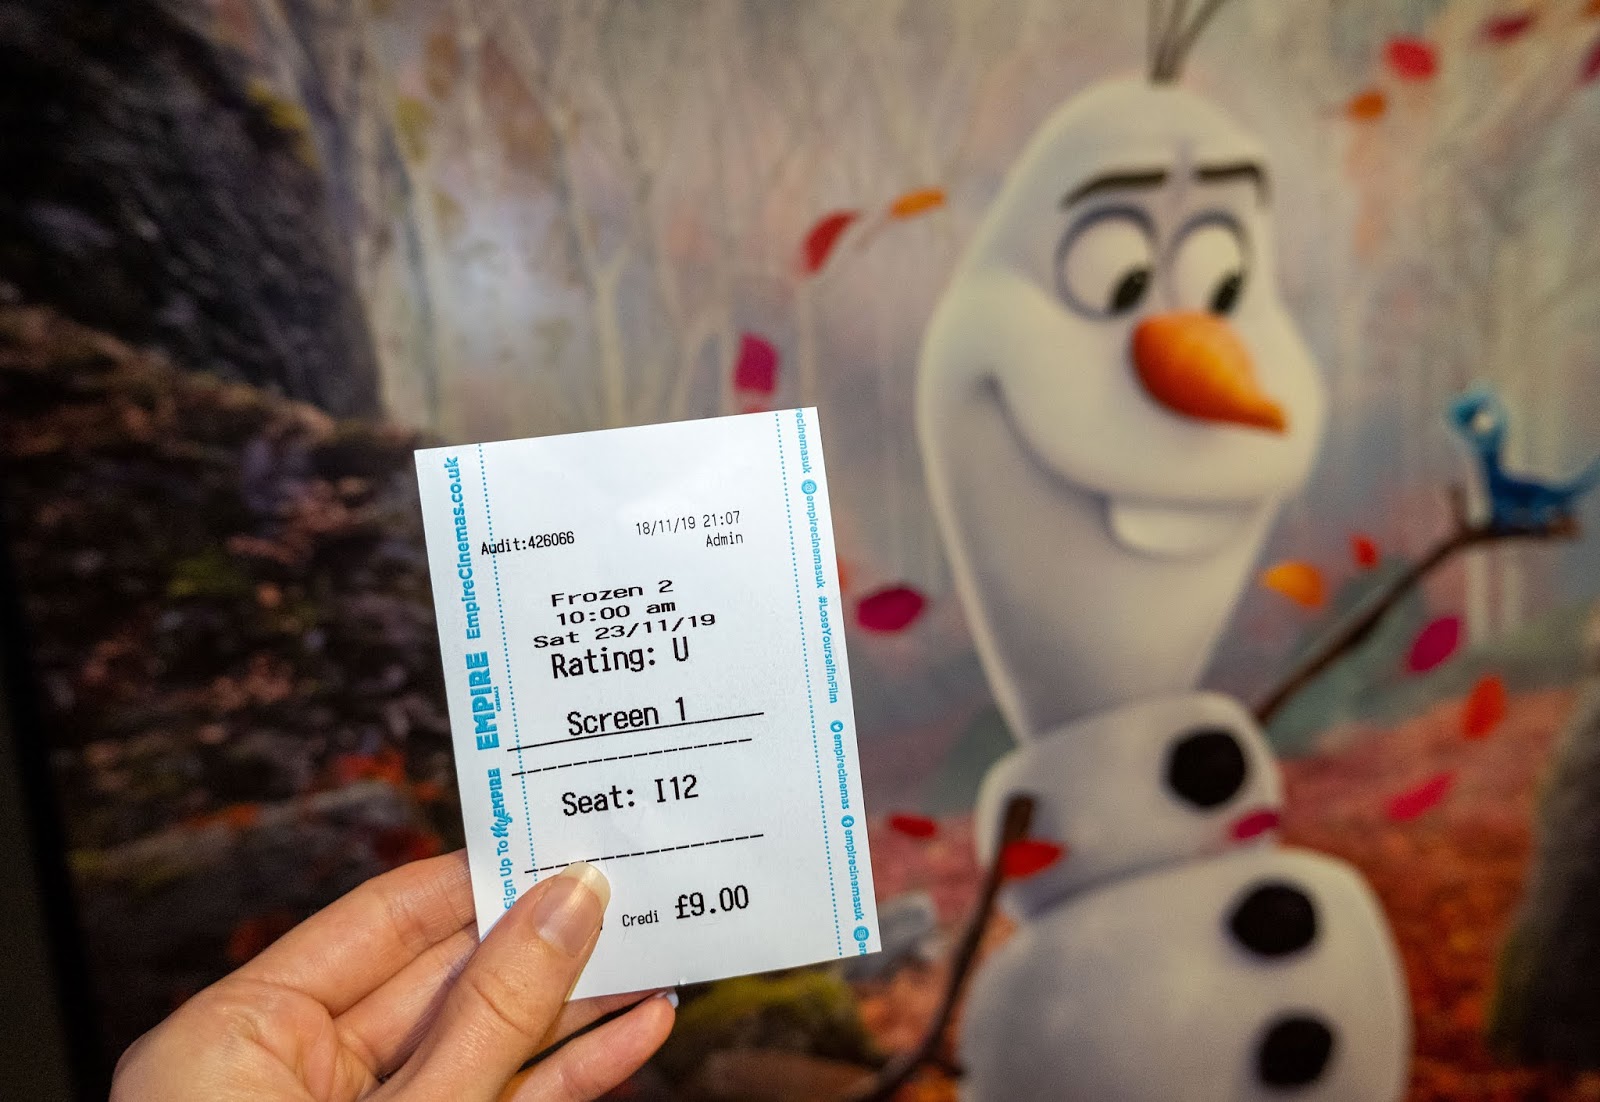 My Frozen 2 cinema ticket